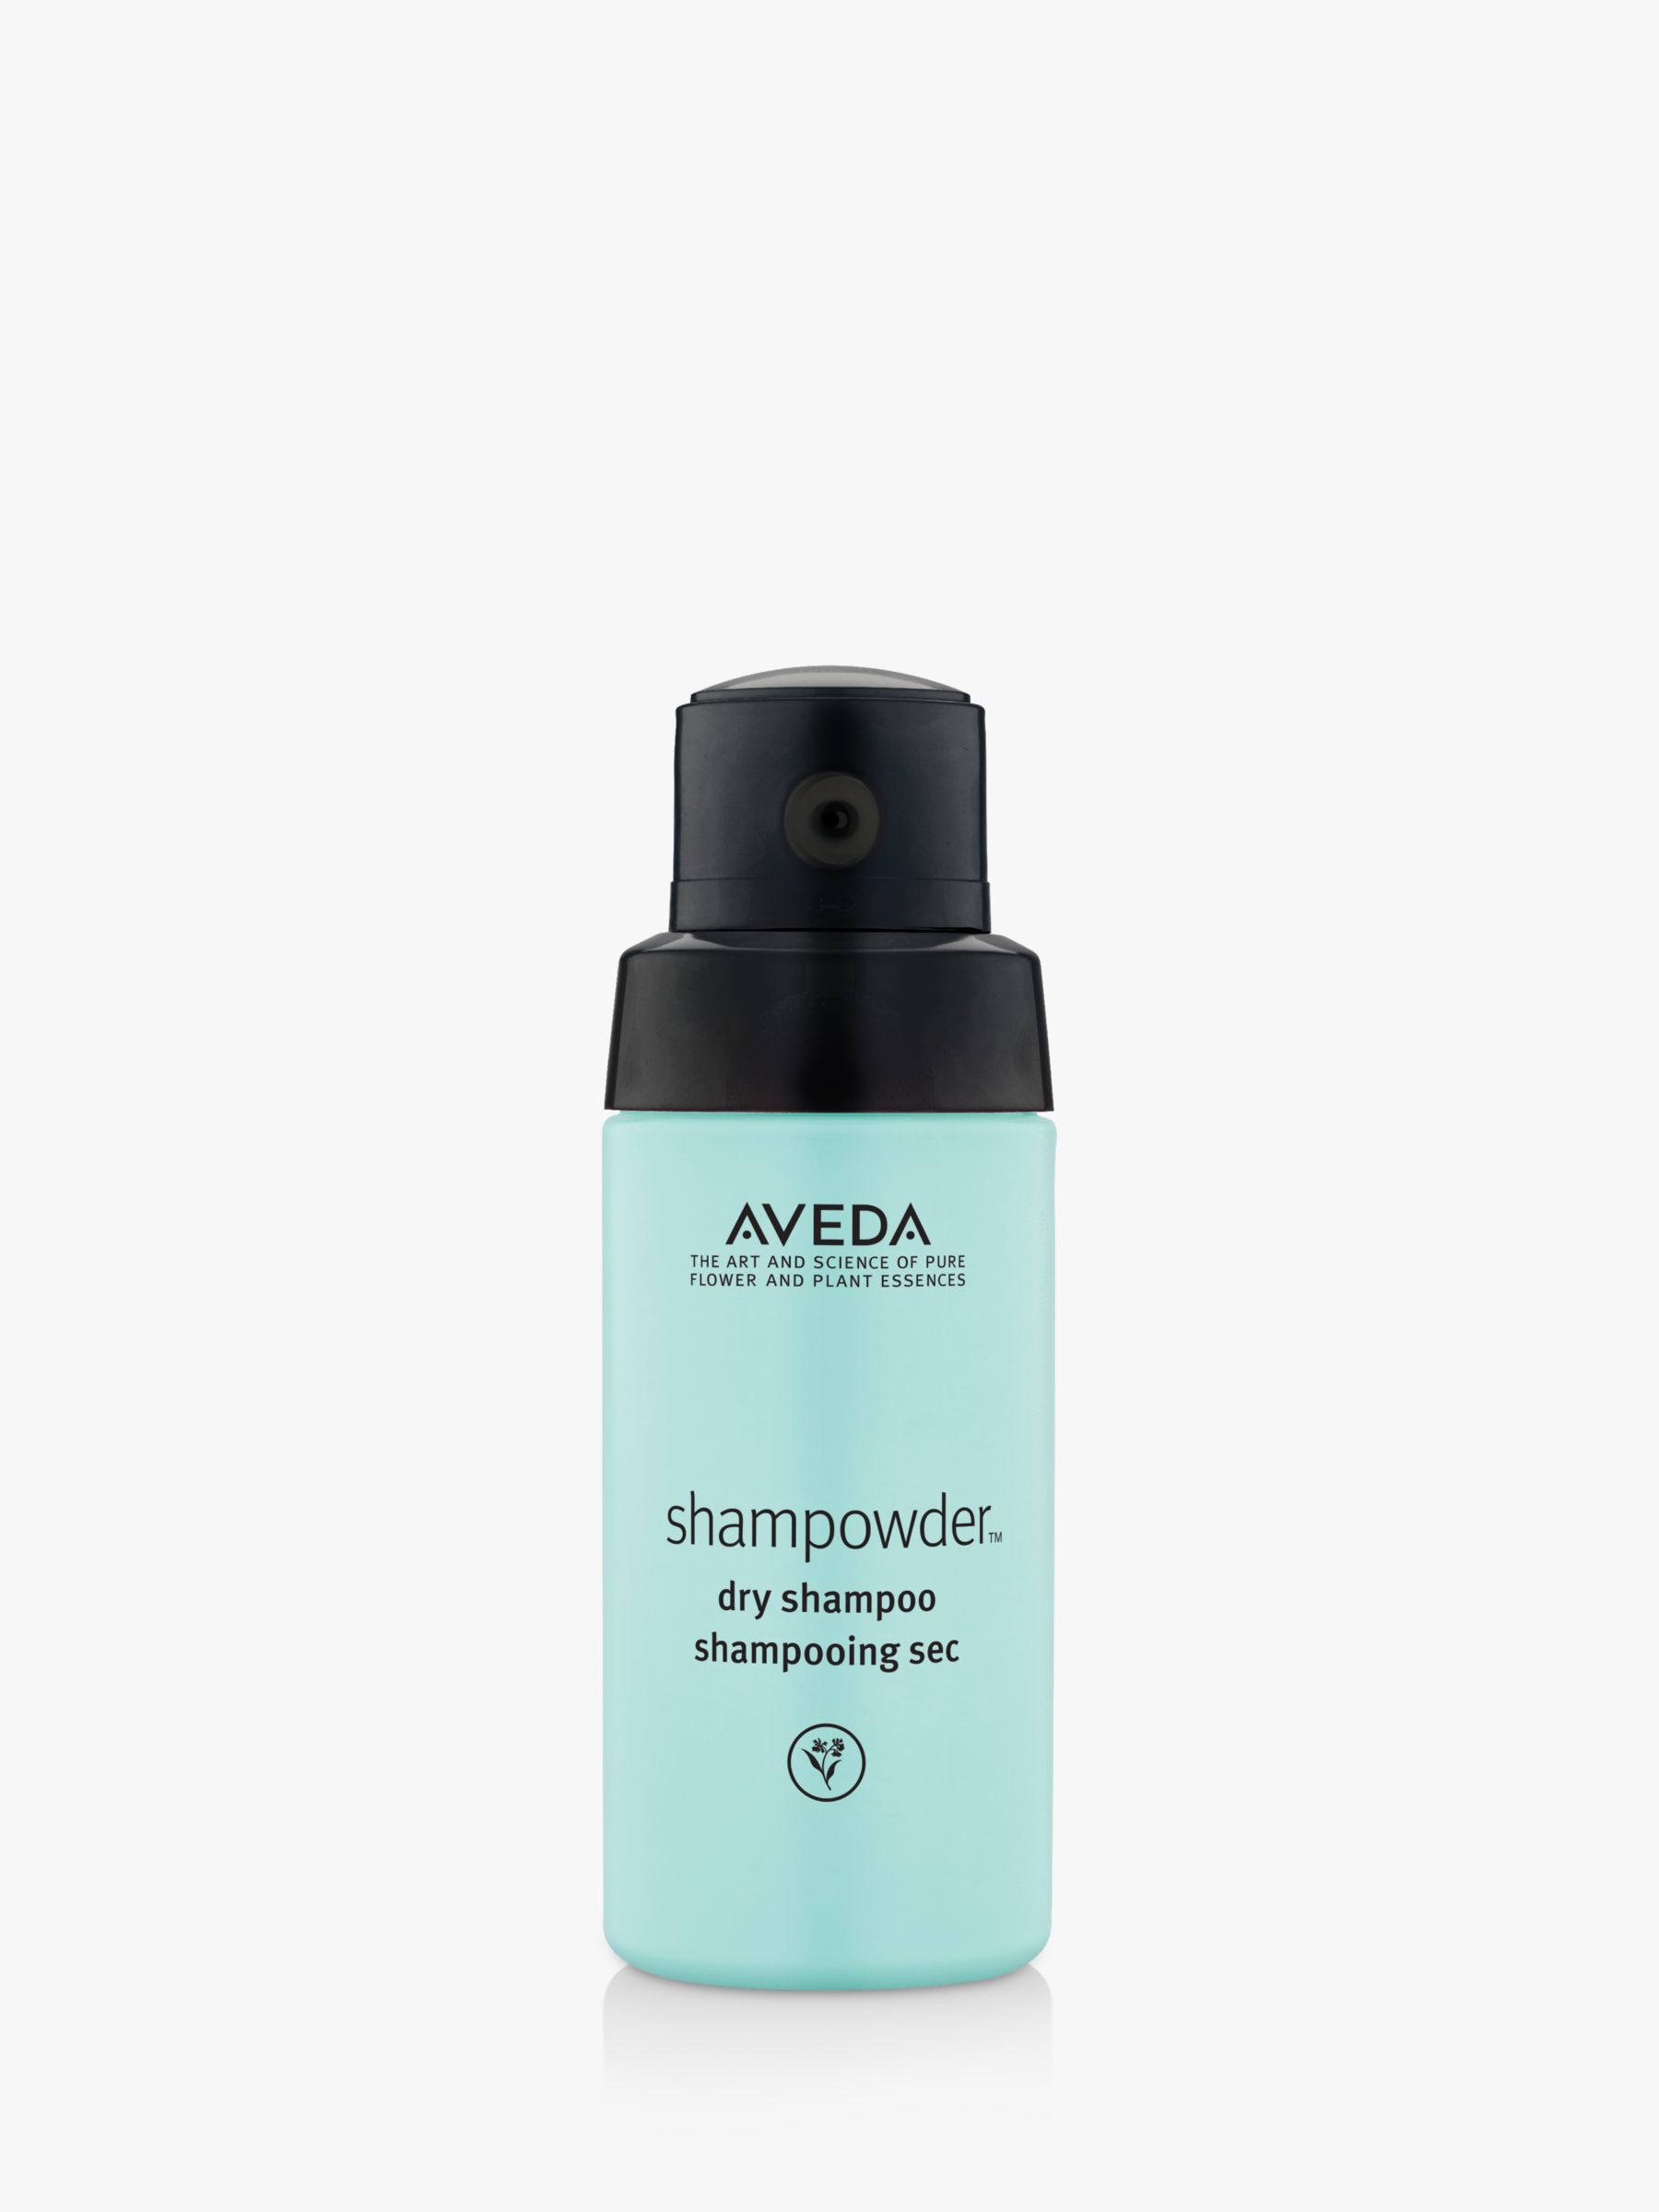 Aveda Shampowder Dry Shampoo, 56g 1